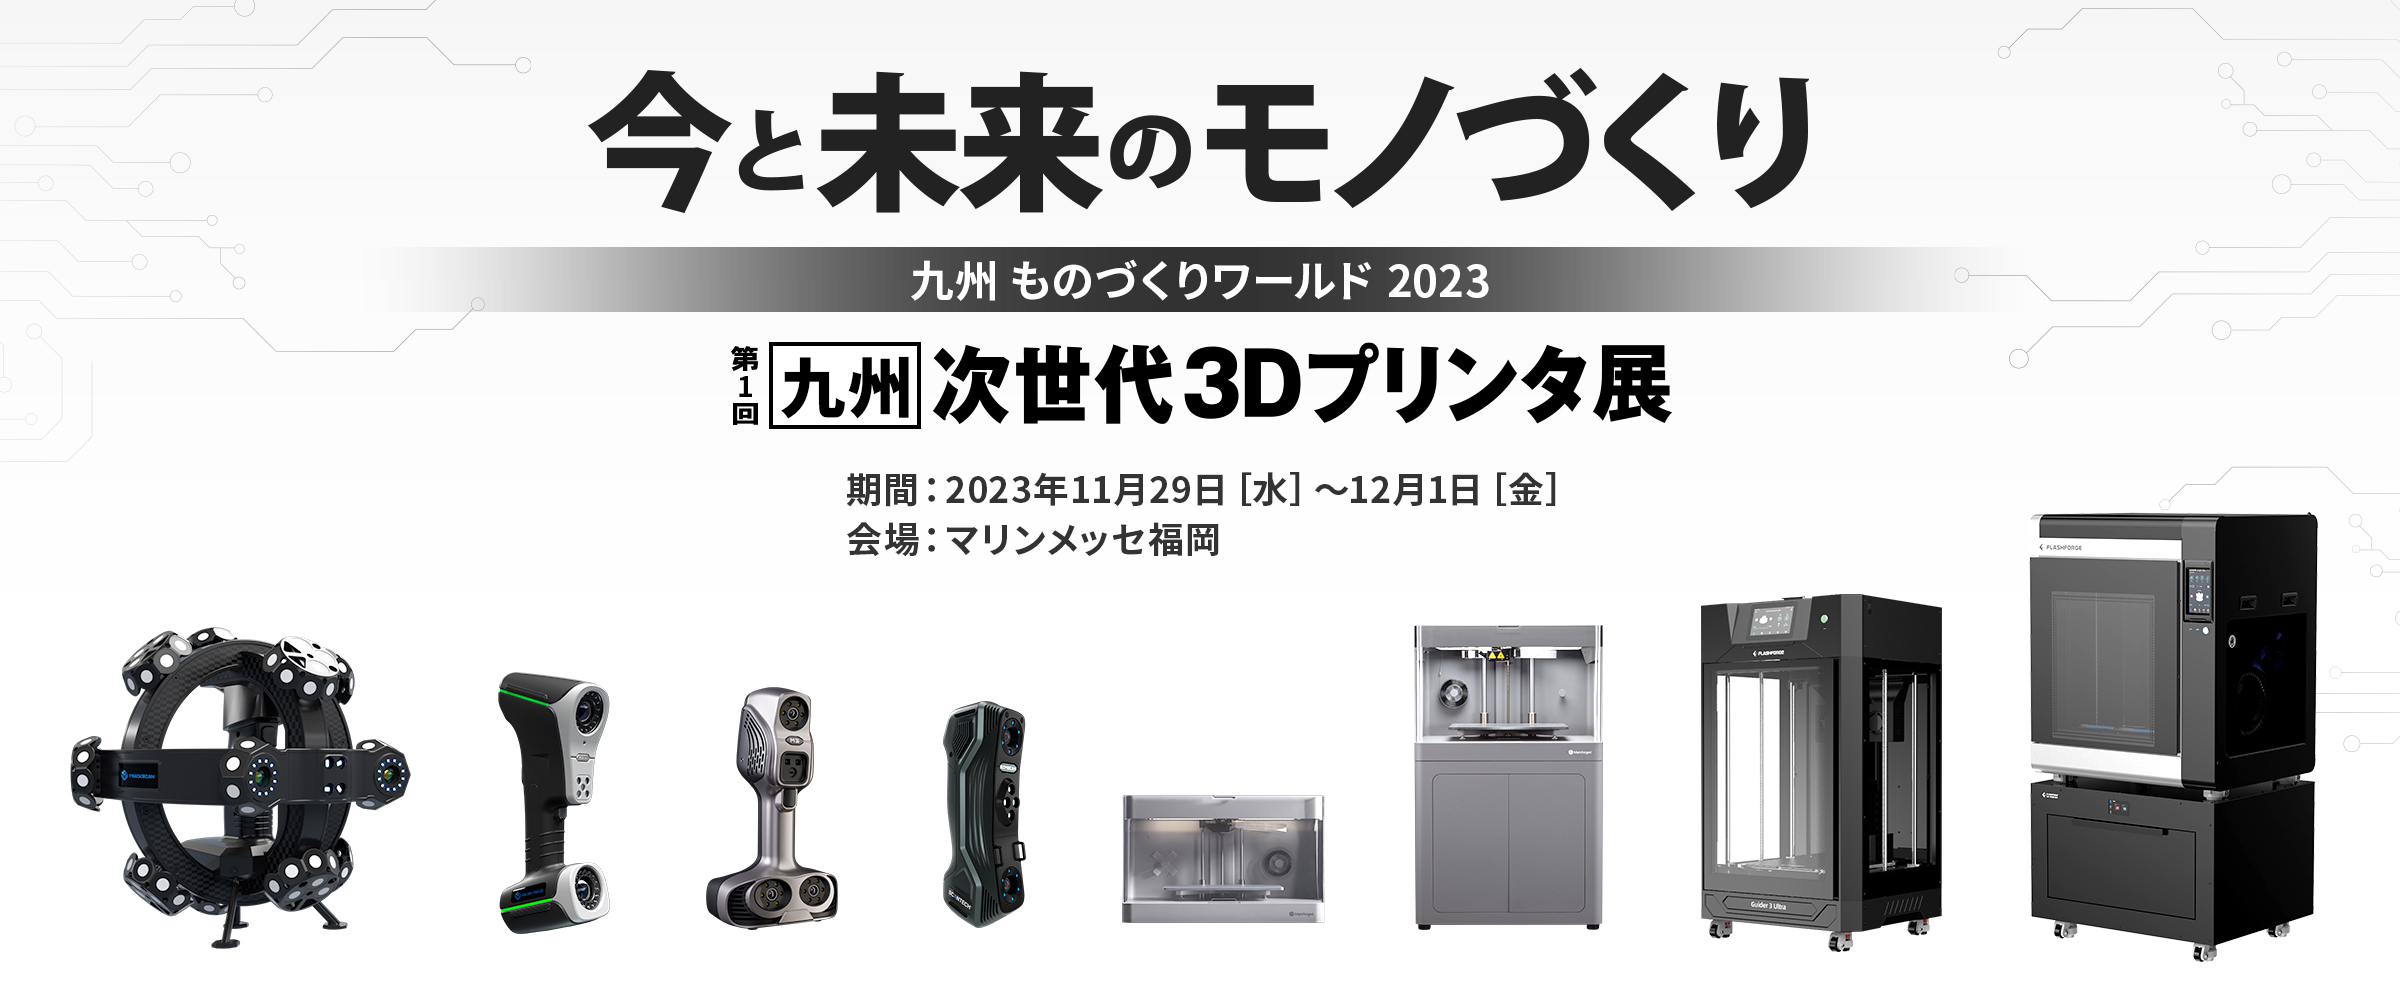 九州次世代3Dプリンタ展のお知らせ画像